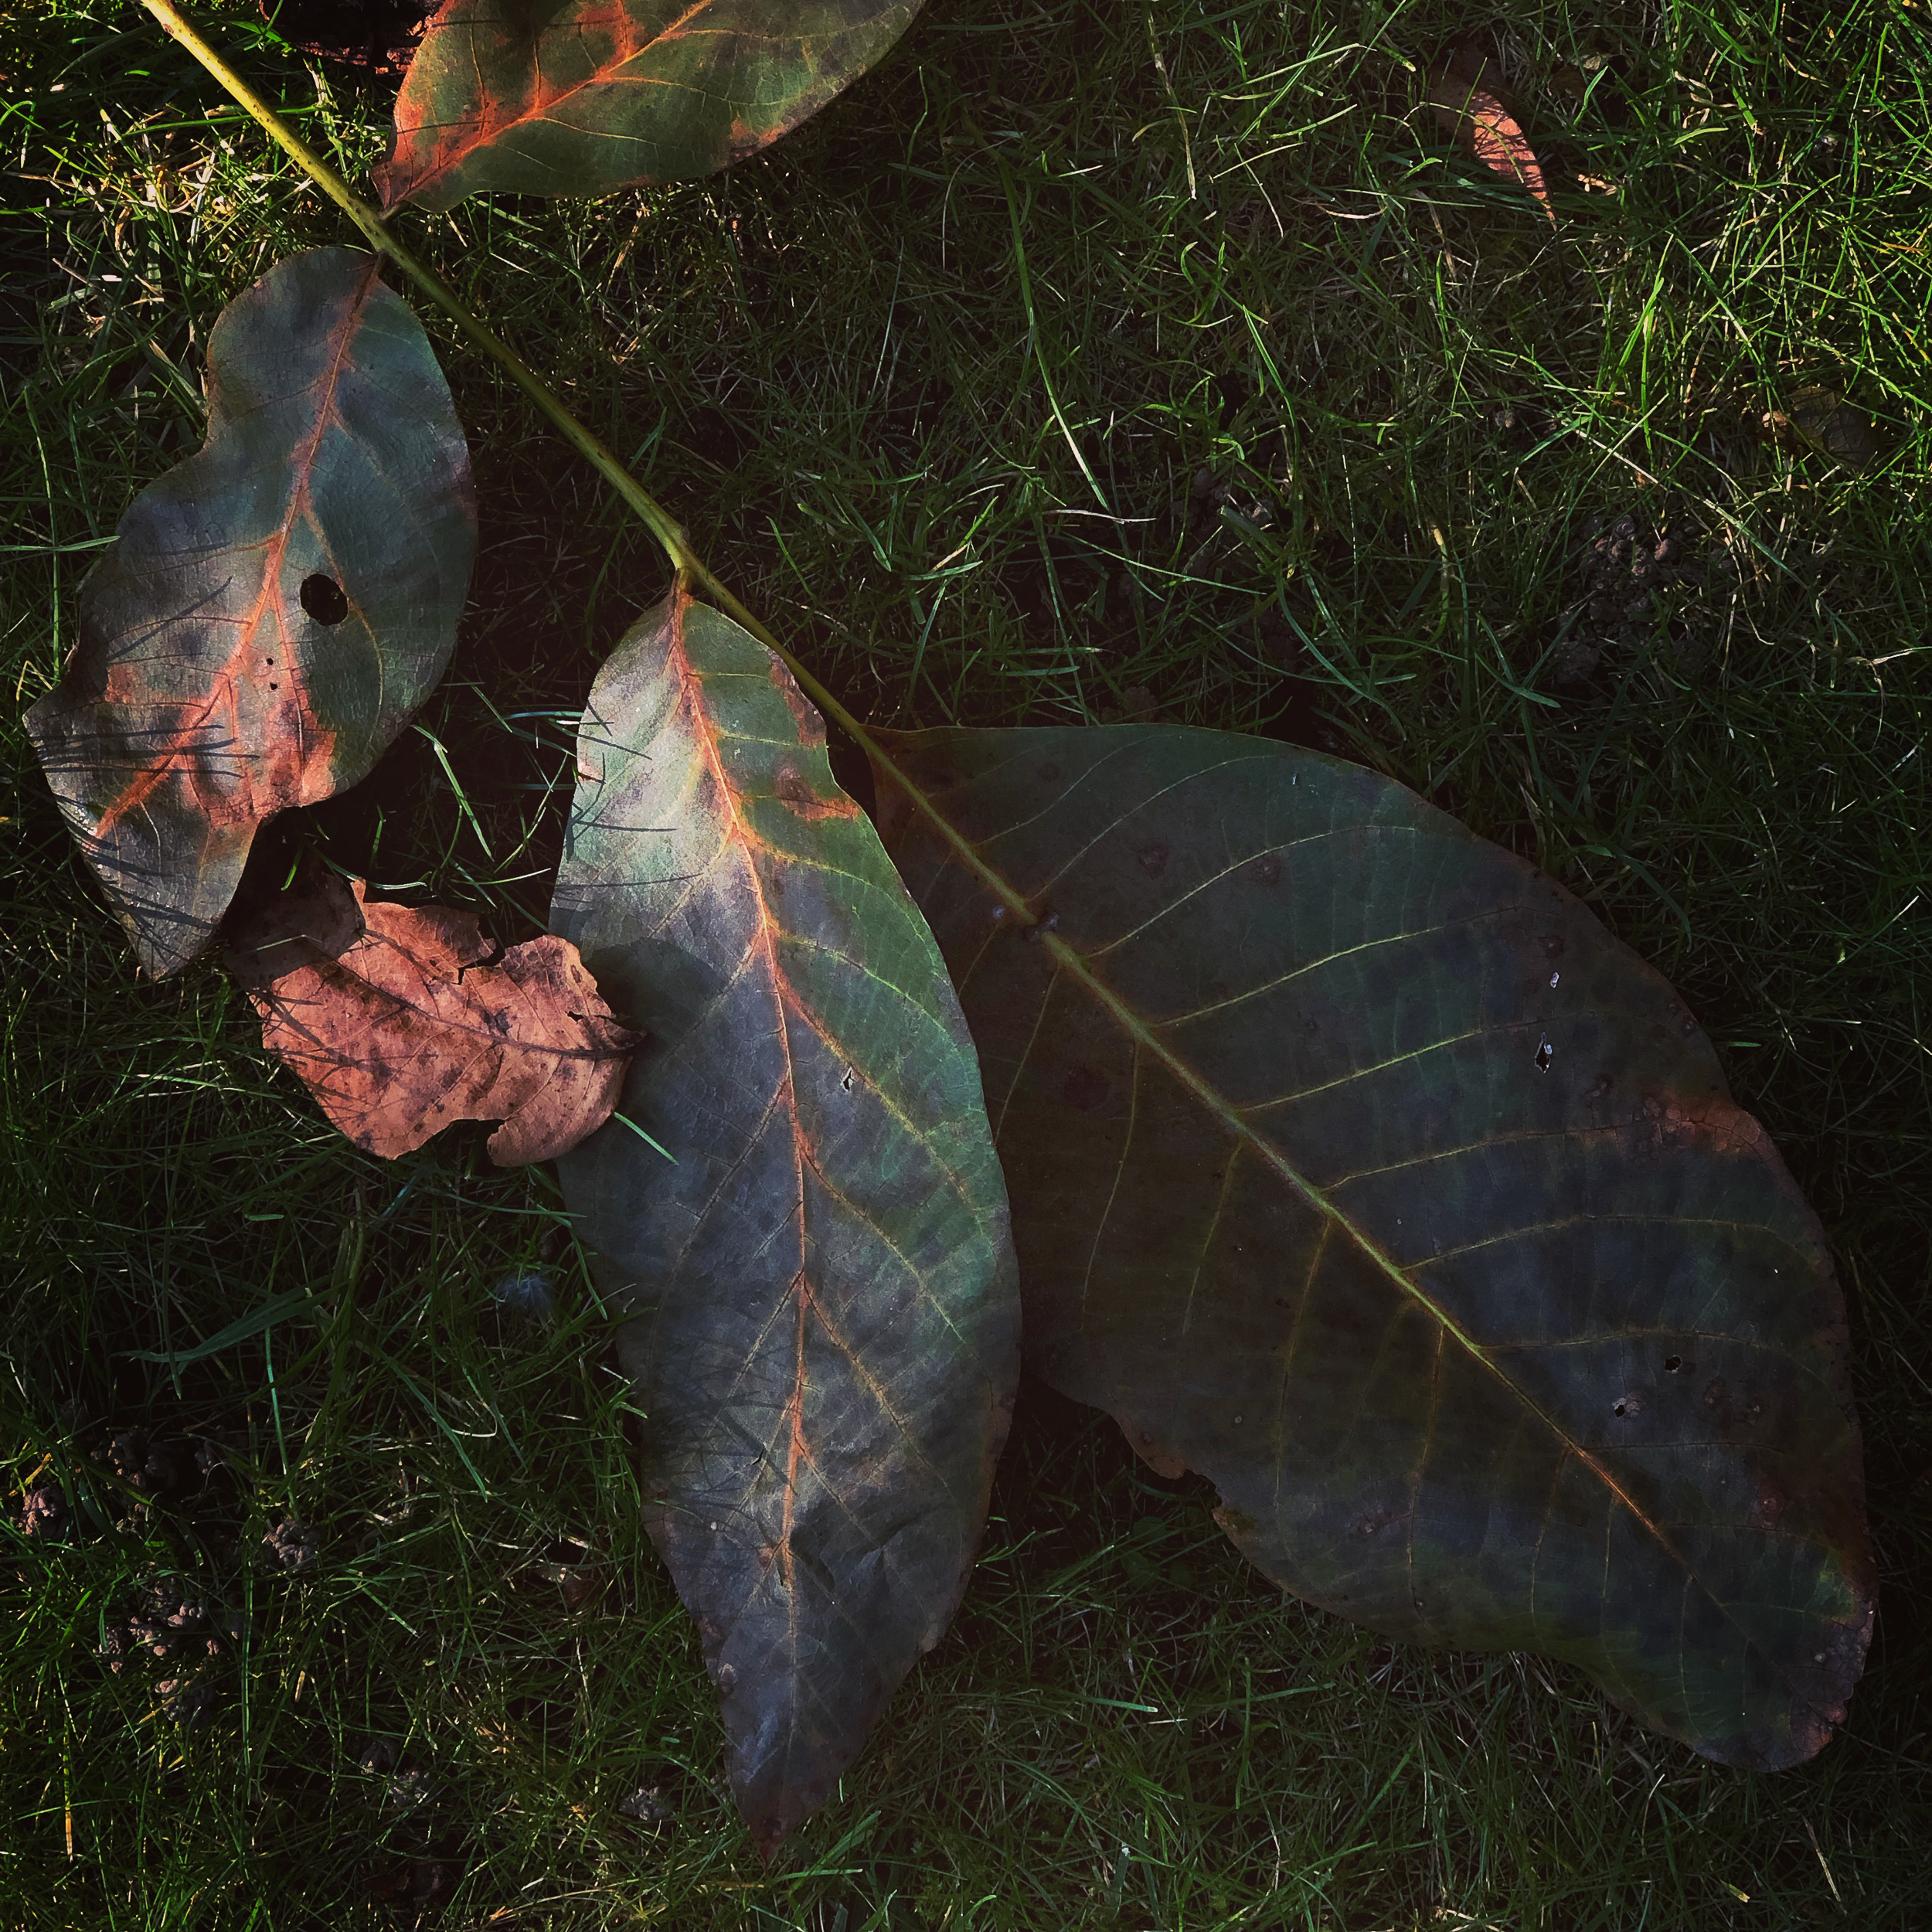 Walnut leaves